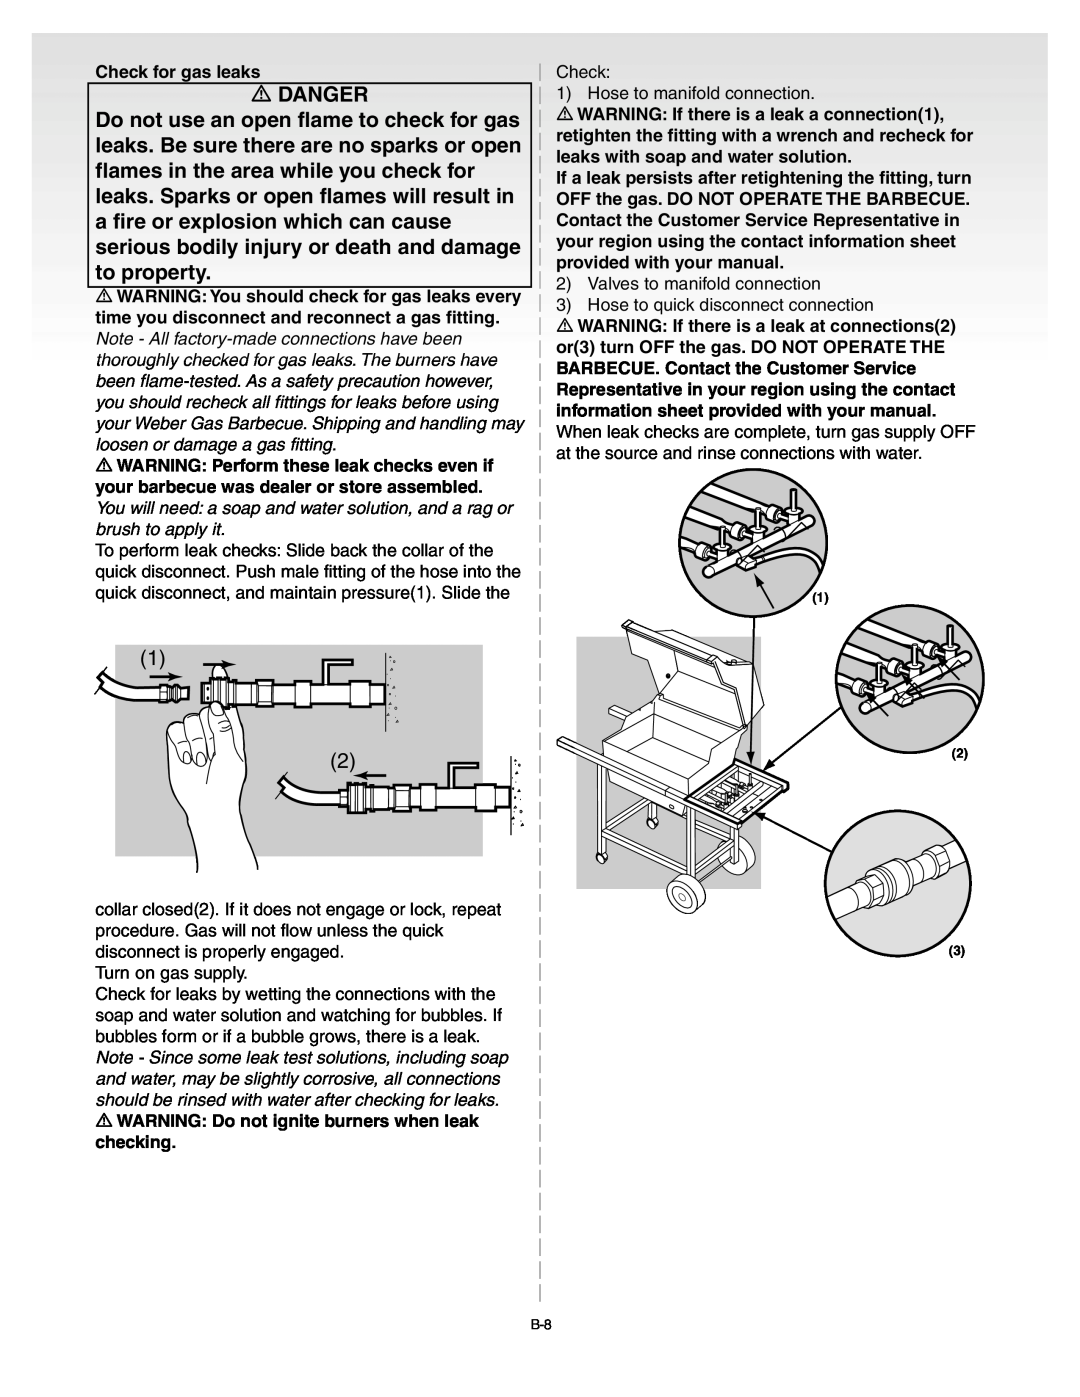 Weber B067.E, C052.C, A101.c manual Danger, Check for gas leaks 